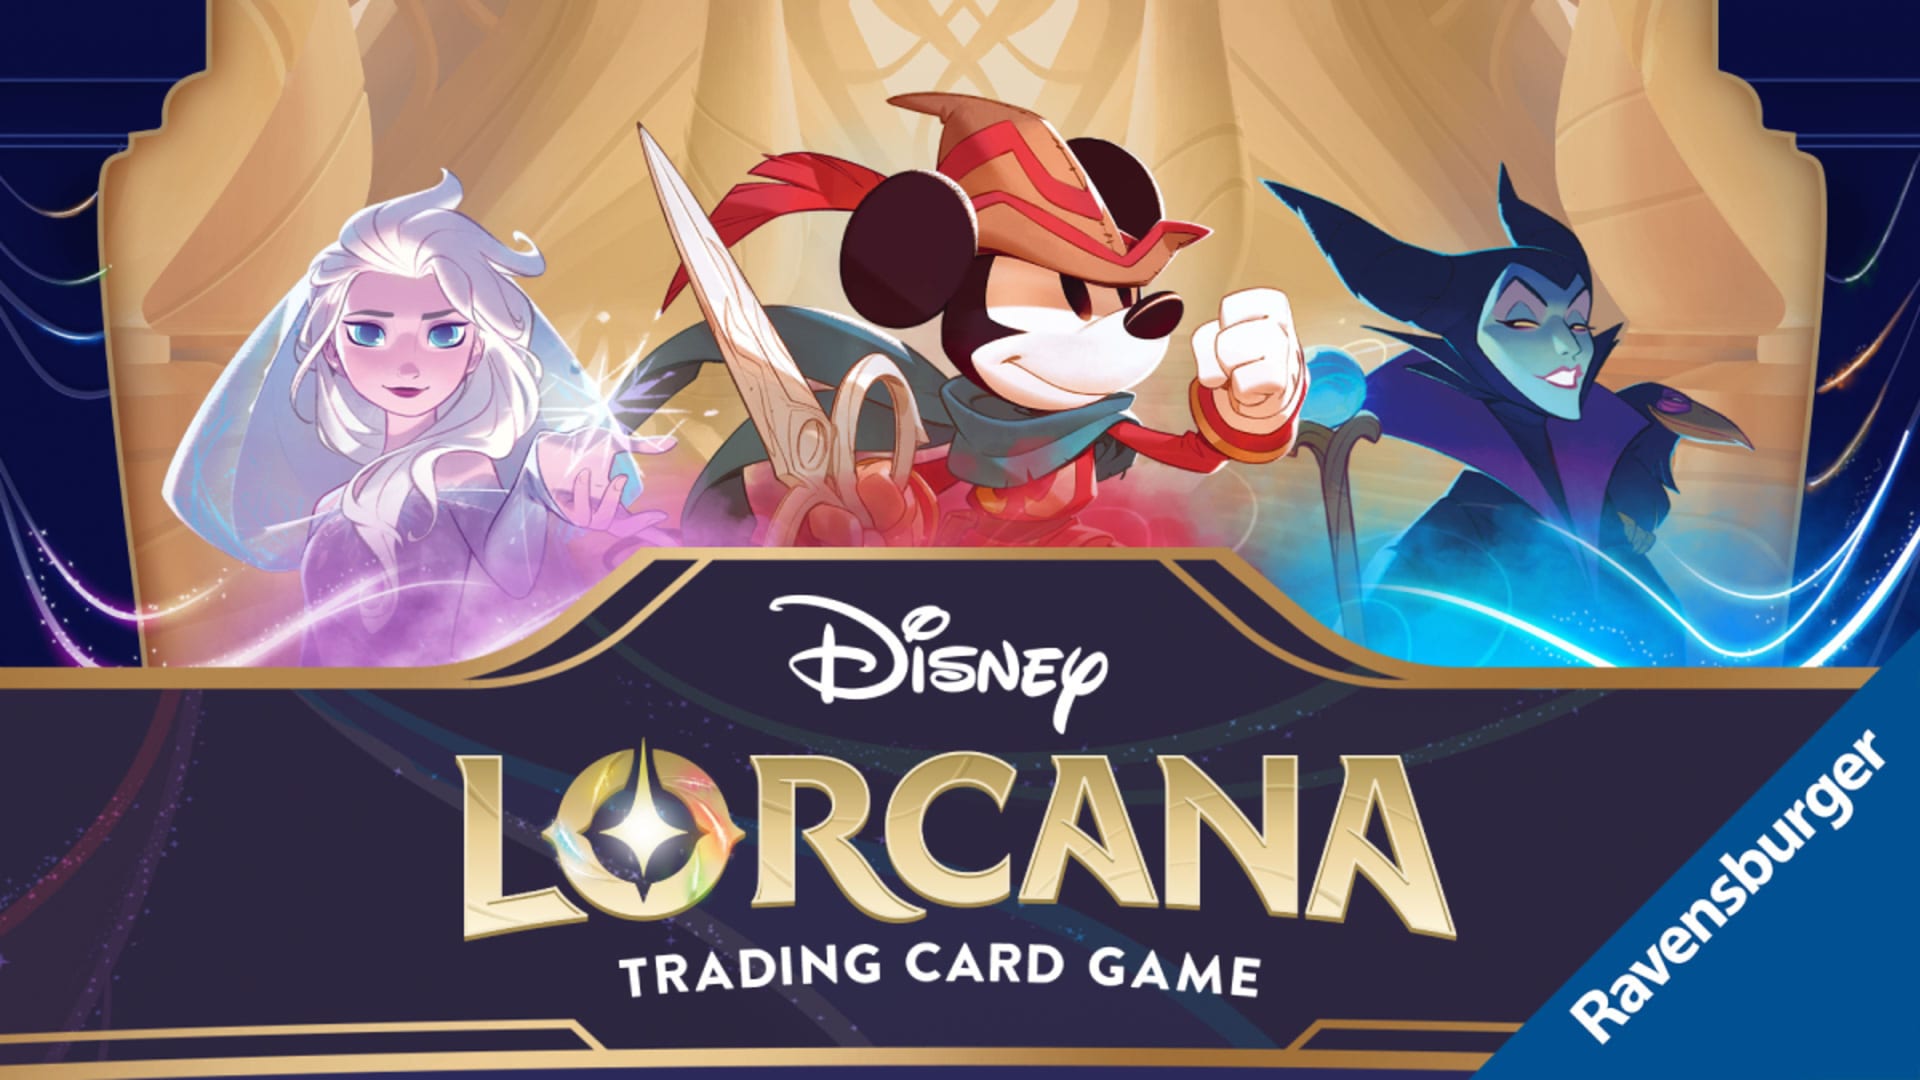 Oblíbené postavy ožívají ve sběratelské karetní hře Disney Lorcana: Objevte její kouzlo